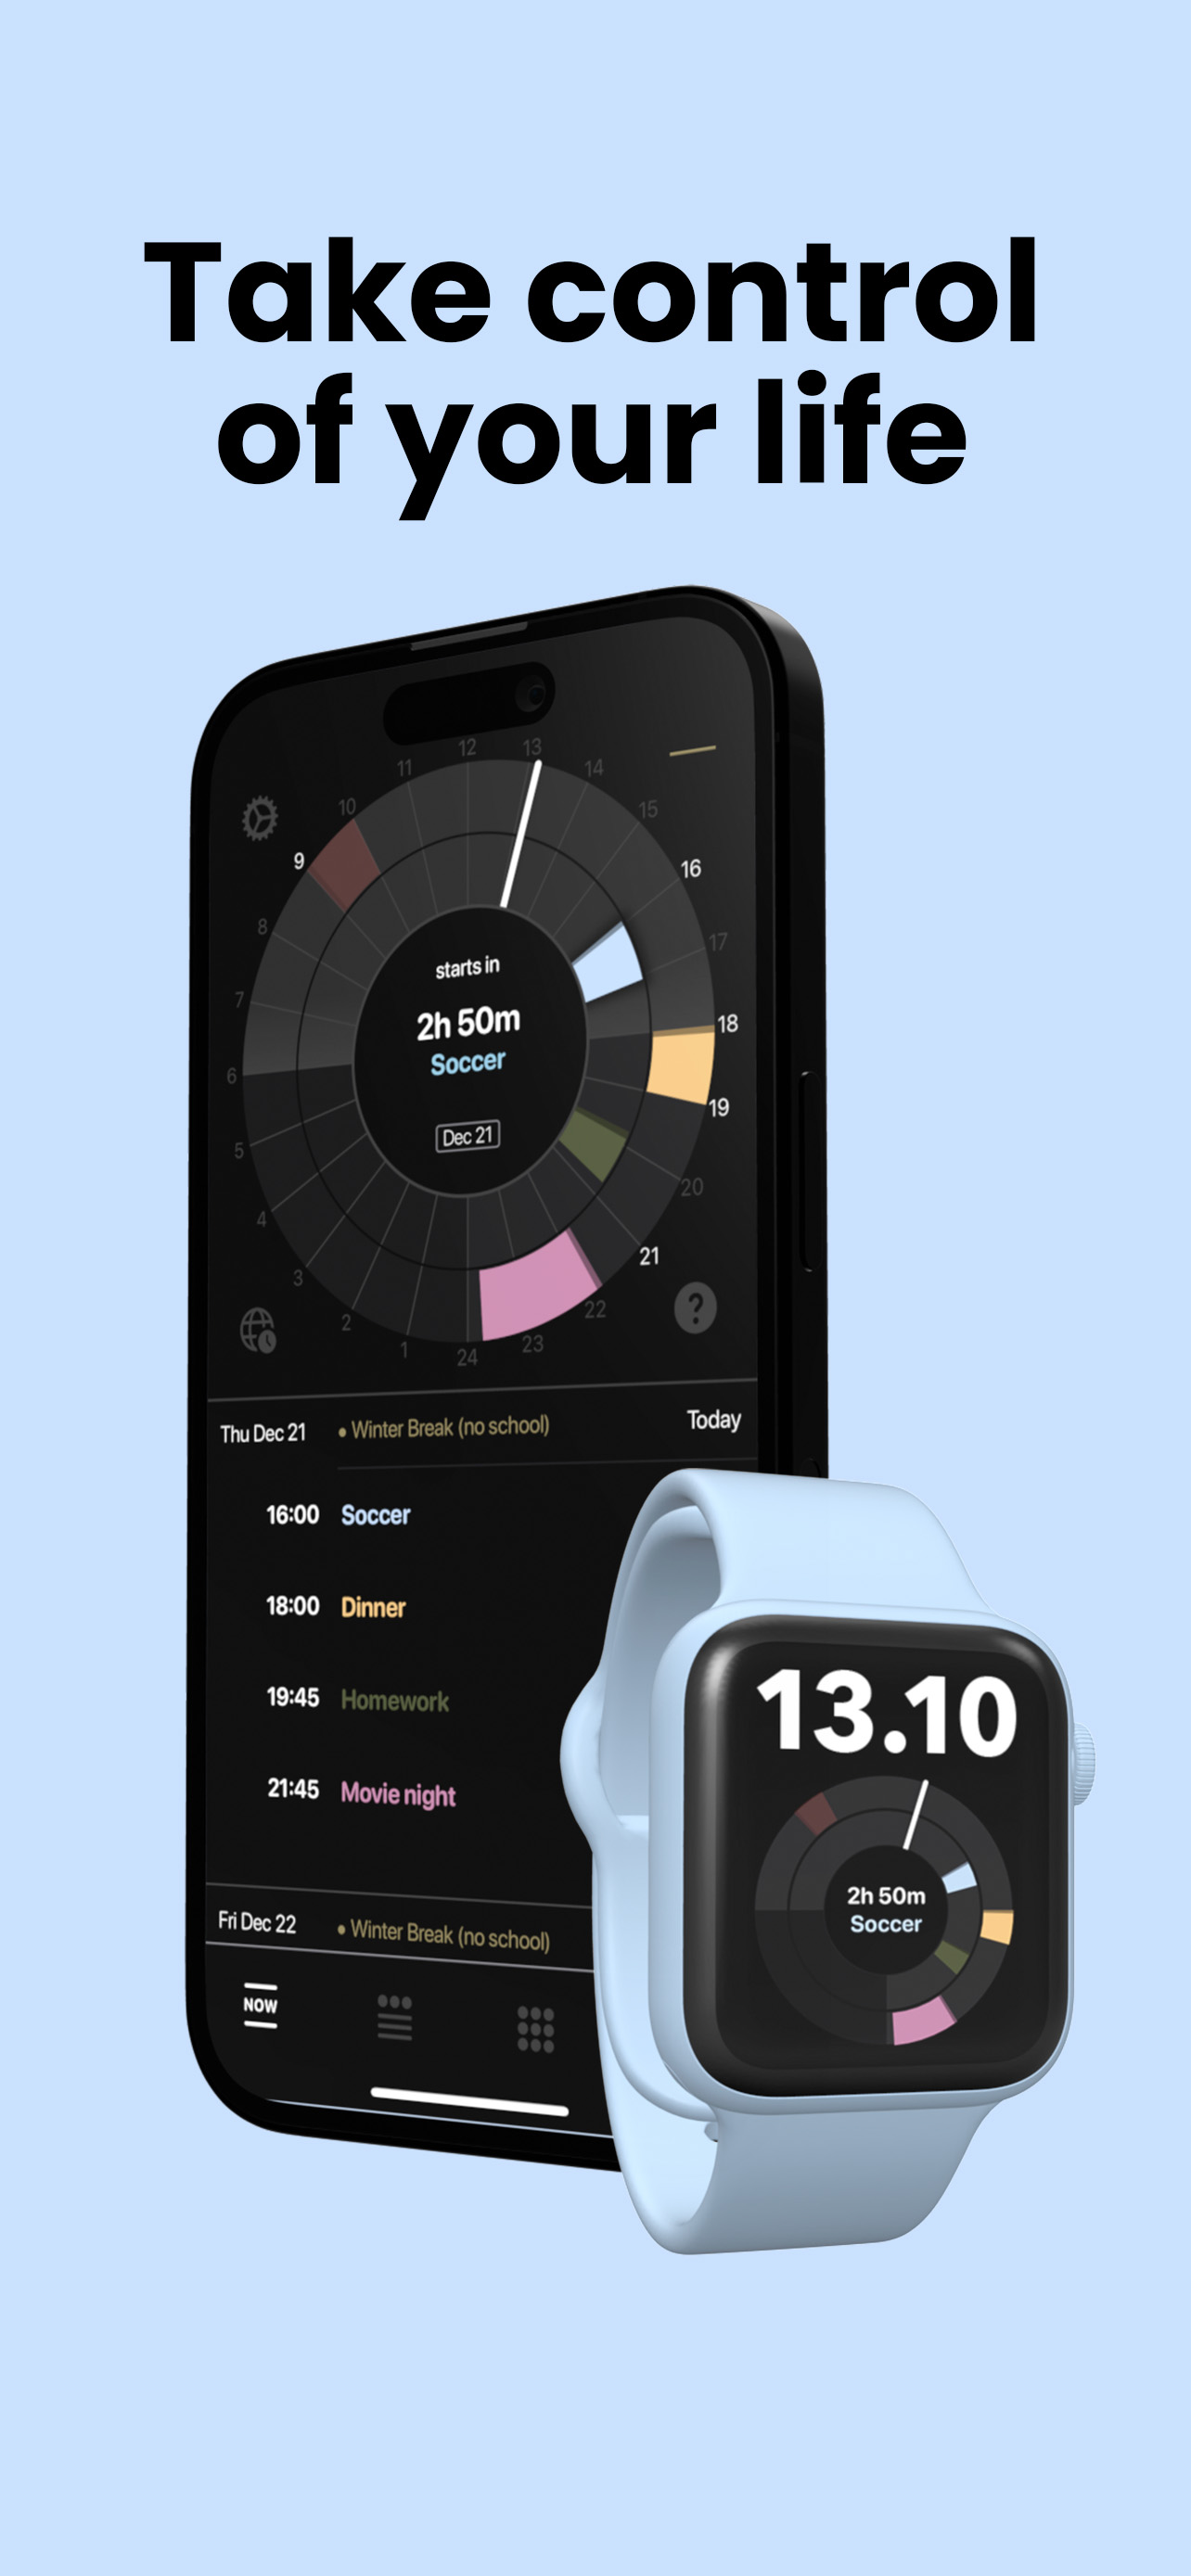 Weel Planner App For iPhone, iPad, desktop and Apple Watch